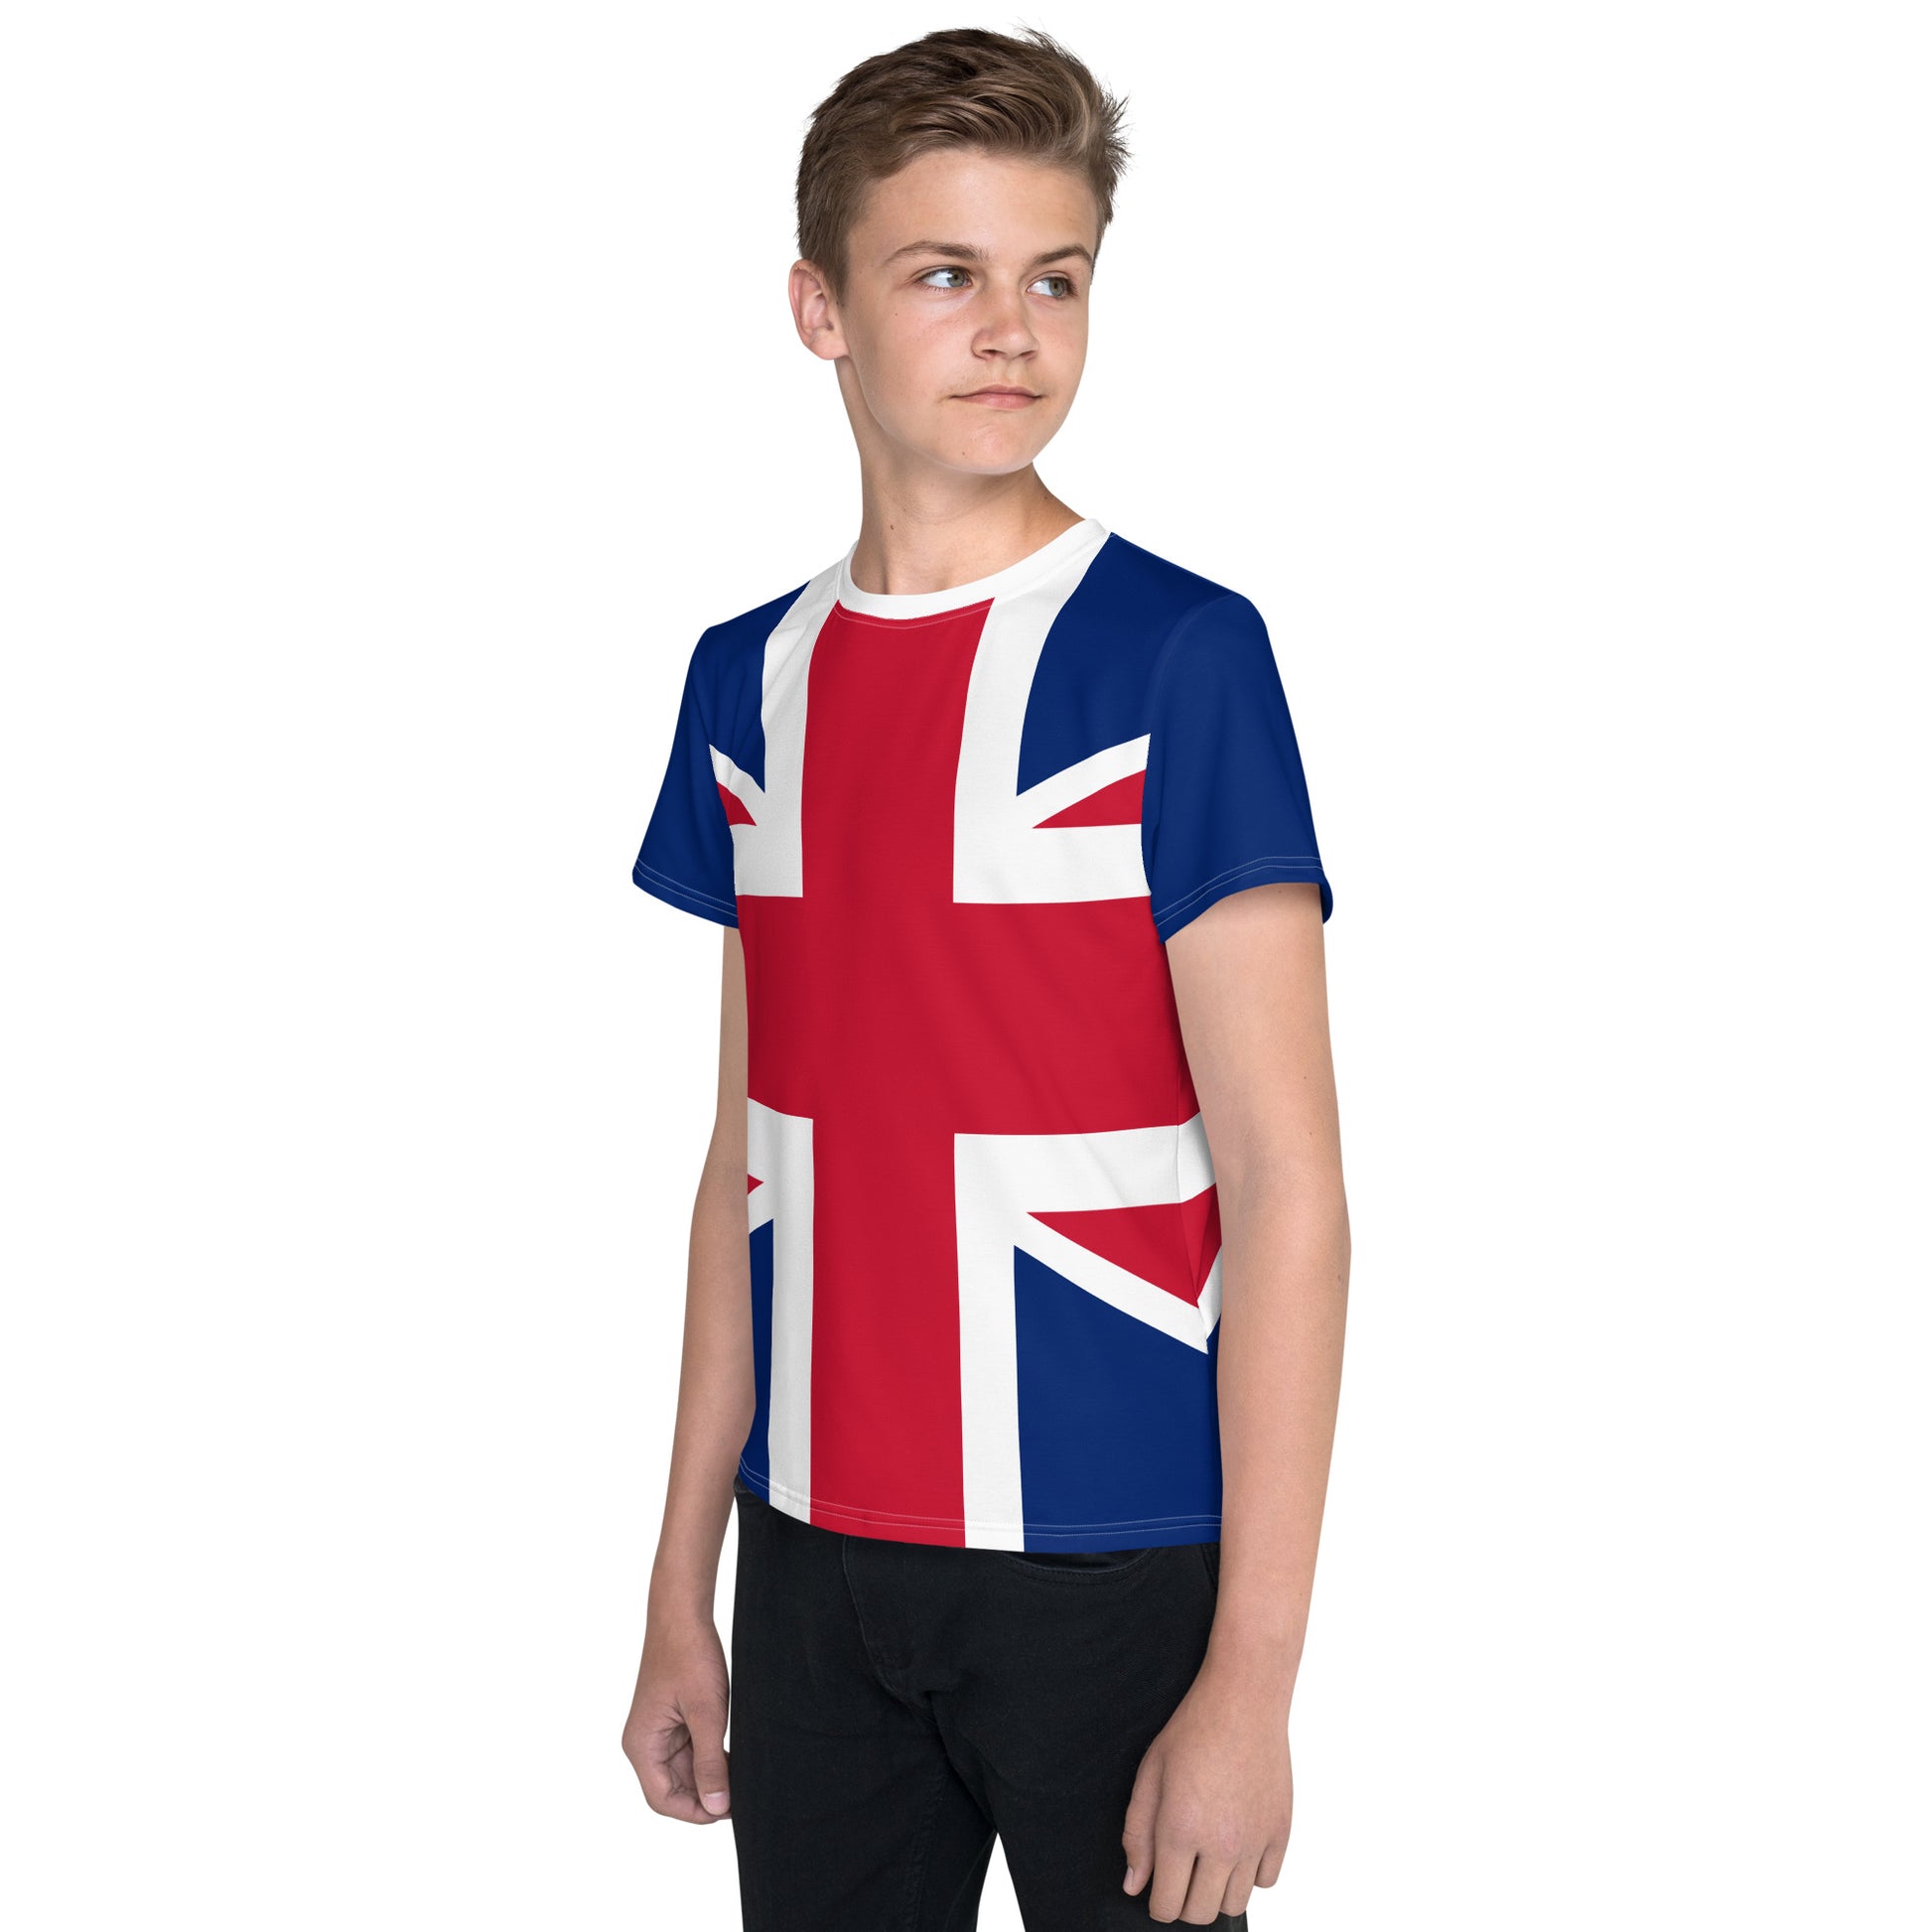 Youth Sizes T Shirt Union Jack